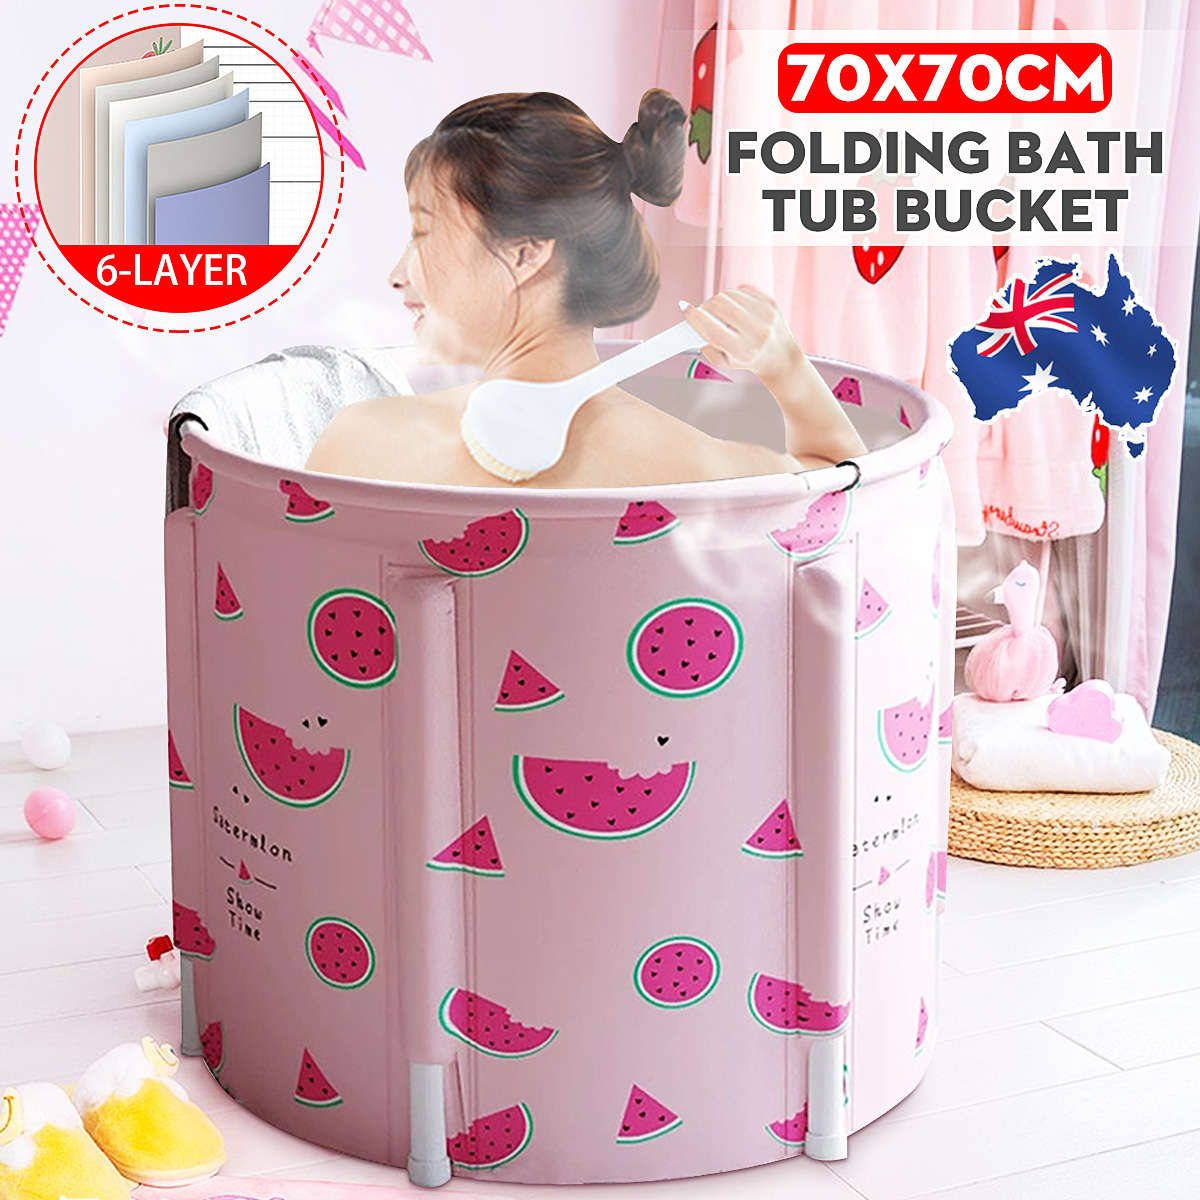 70x70CM Portable PVC Folding Bathtub Water Spa Tub Bath Bucket Outdoor Bath Tub 1